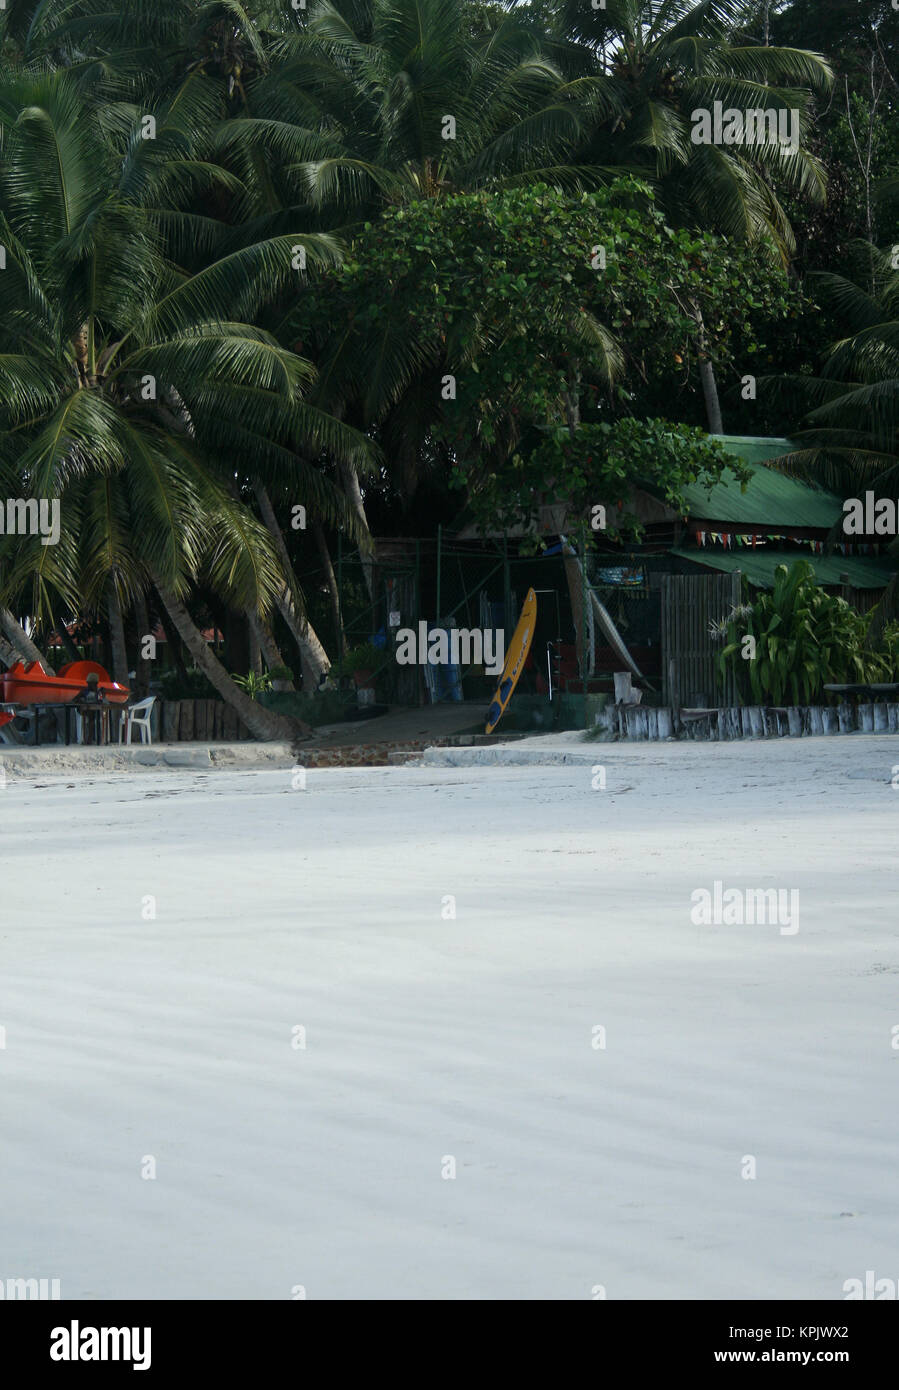 Surfbrett-Verleih am Strand, Insel Praslin; Seychellen. Stockfoto